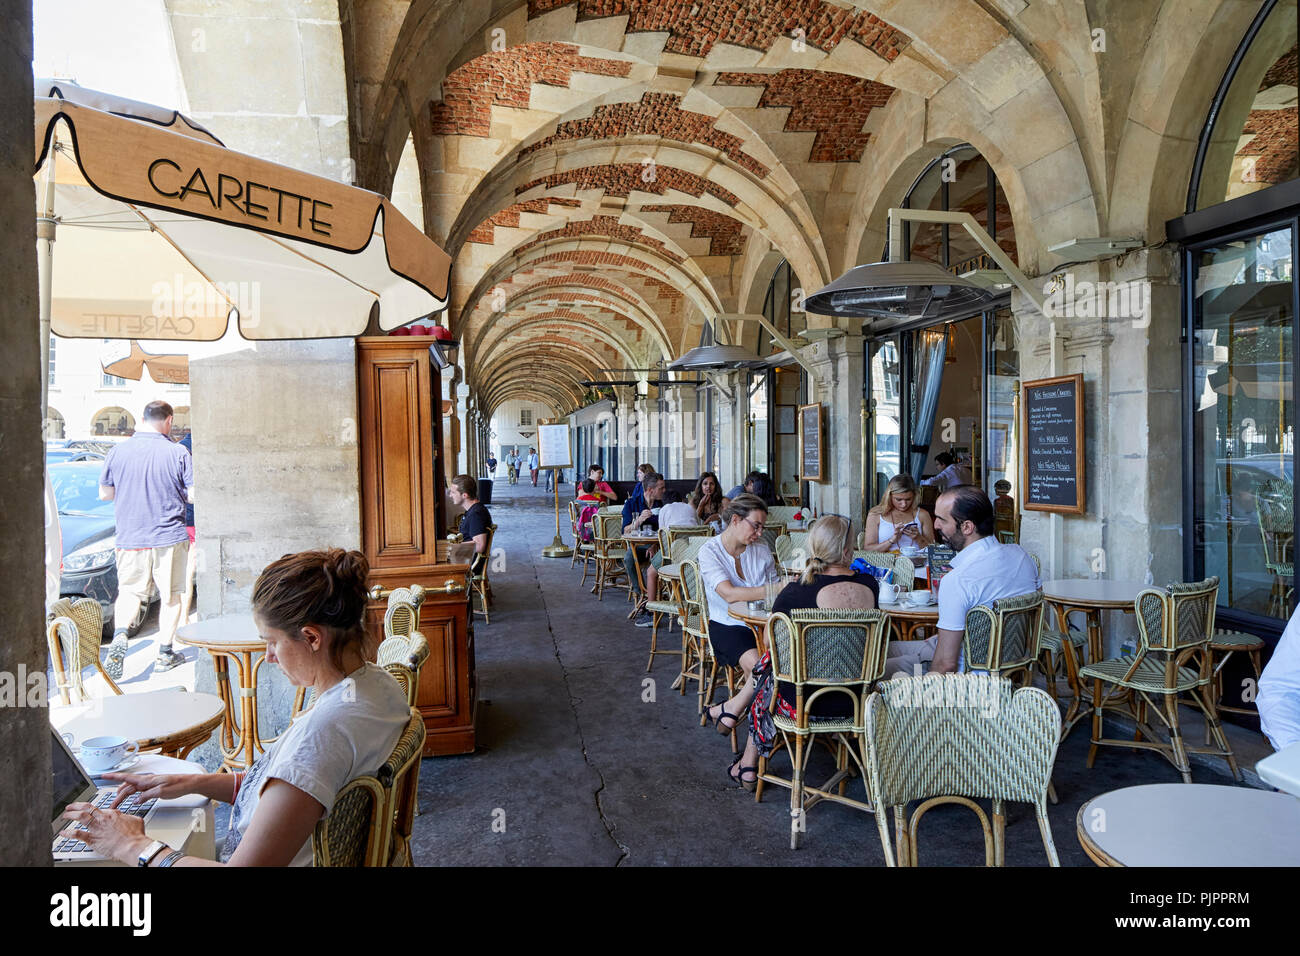 Carette Restaurant, Place des Vosges, the oldest planned square in Paris, Marais district, Paris, France, Europe Stock Photo